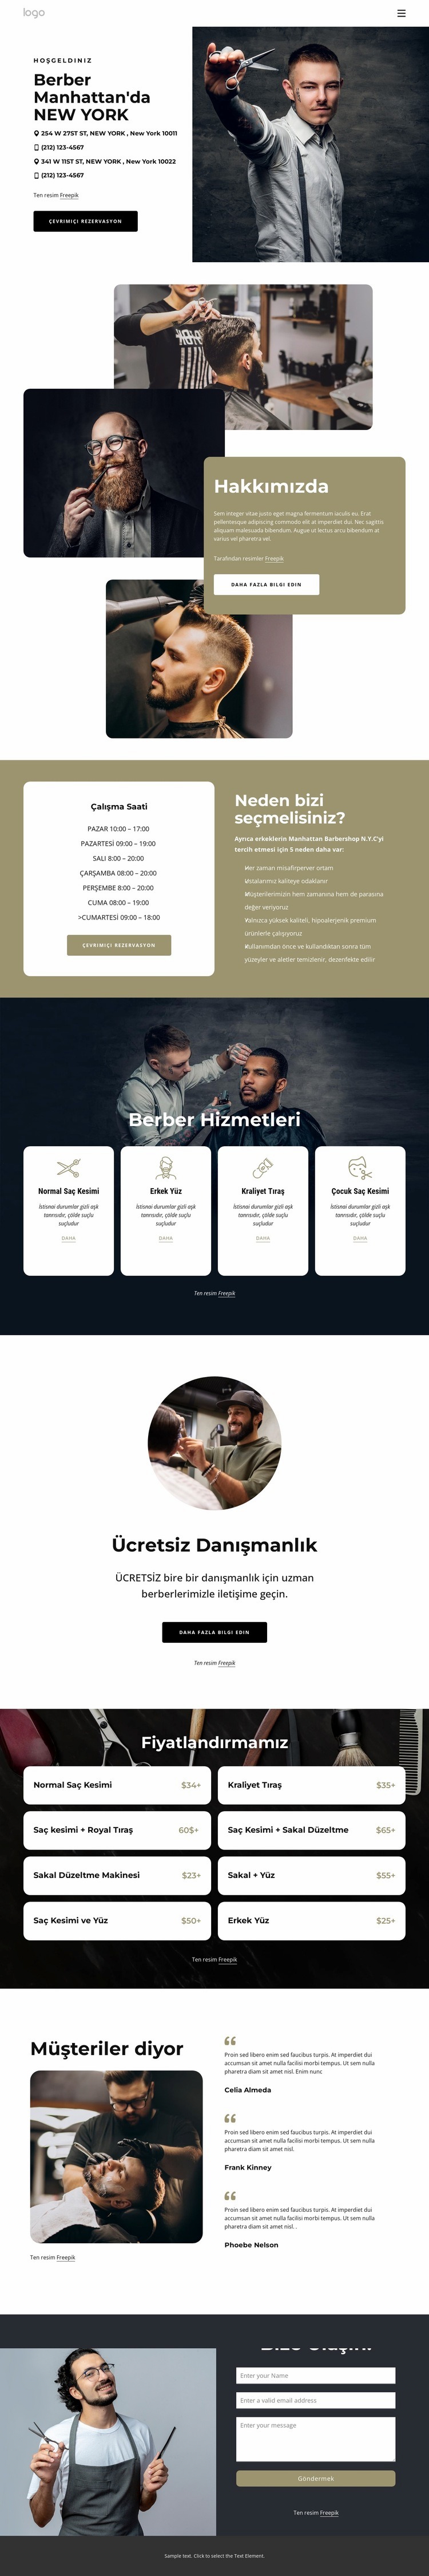 manhattan berber Web sitesi tasarımı